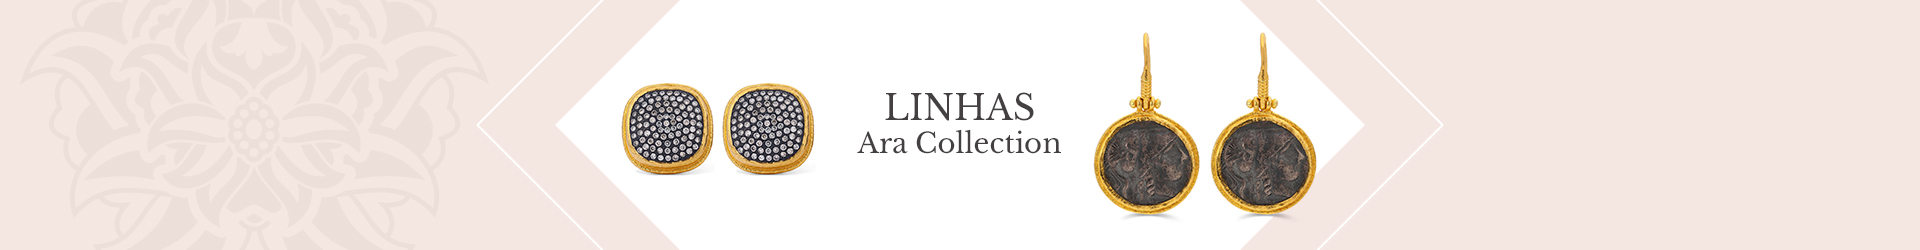 Linhas Ara Collection